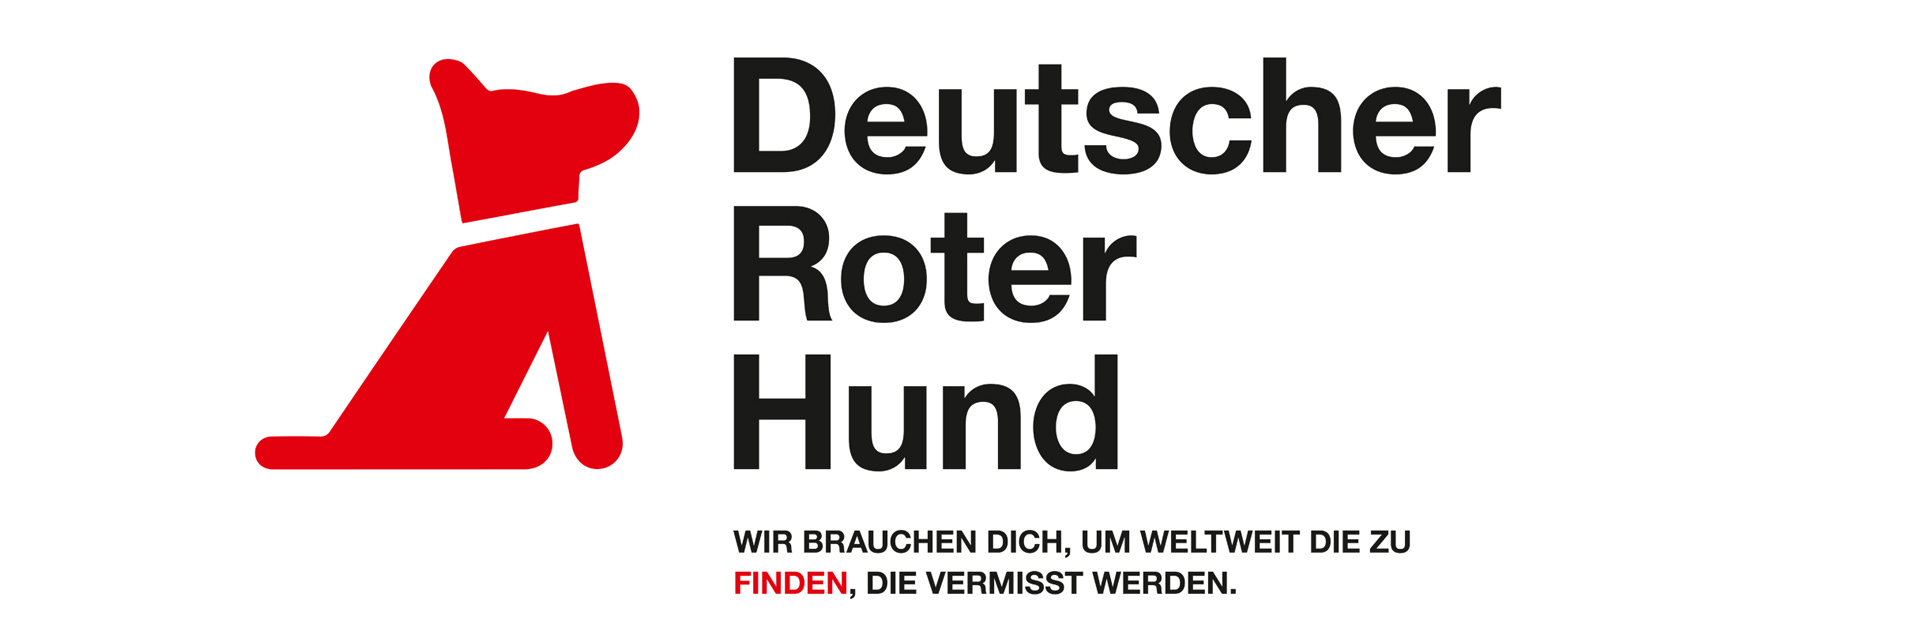 Grafik: DRK-Kampagnenmotiv "Deutscher Roter Hund" mit Hunde-Piktogramm